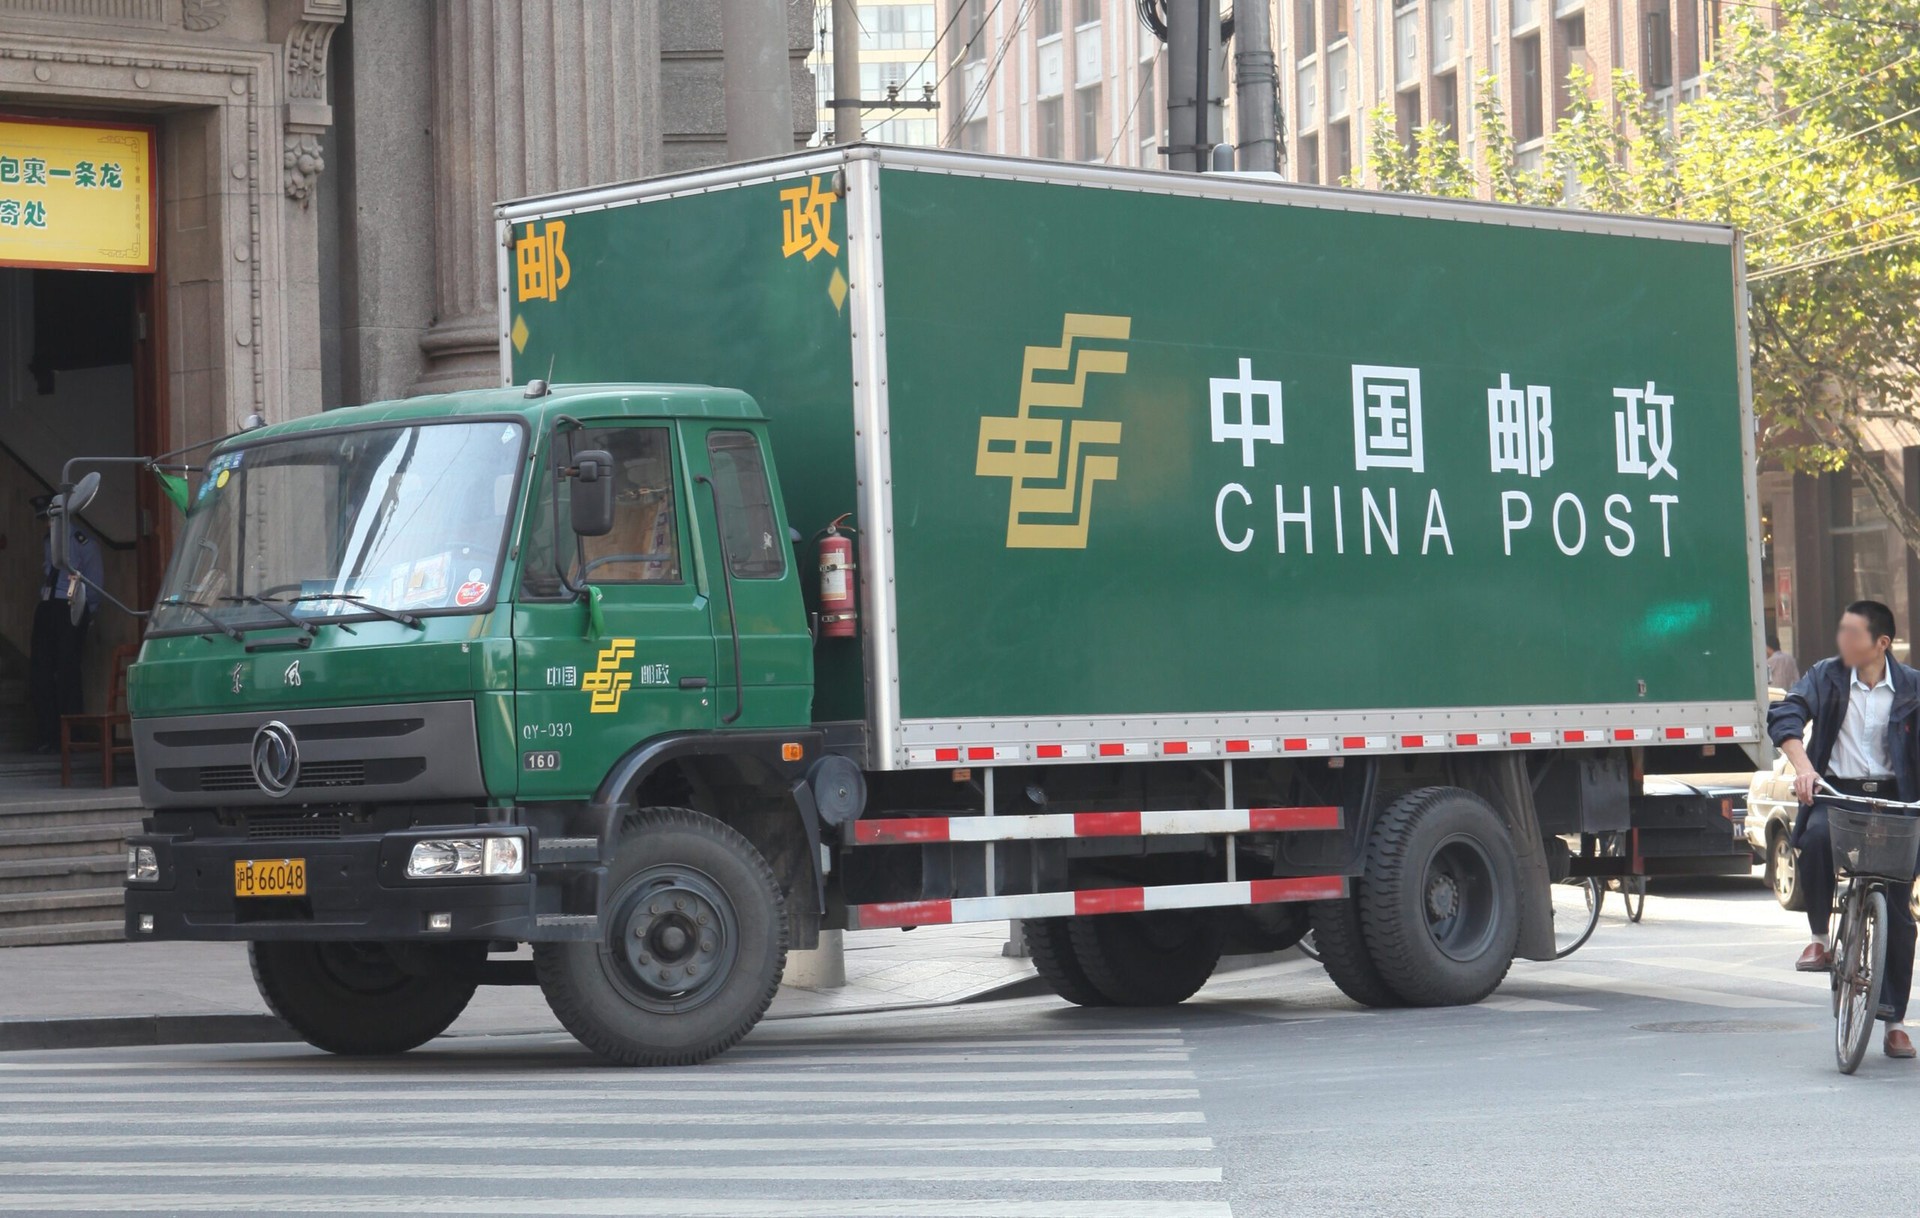  Marketing Strategy of China Post - China Post Truck